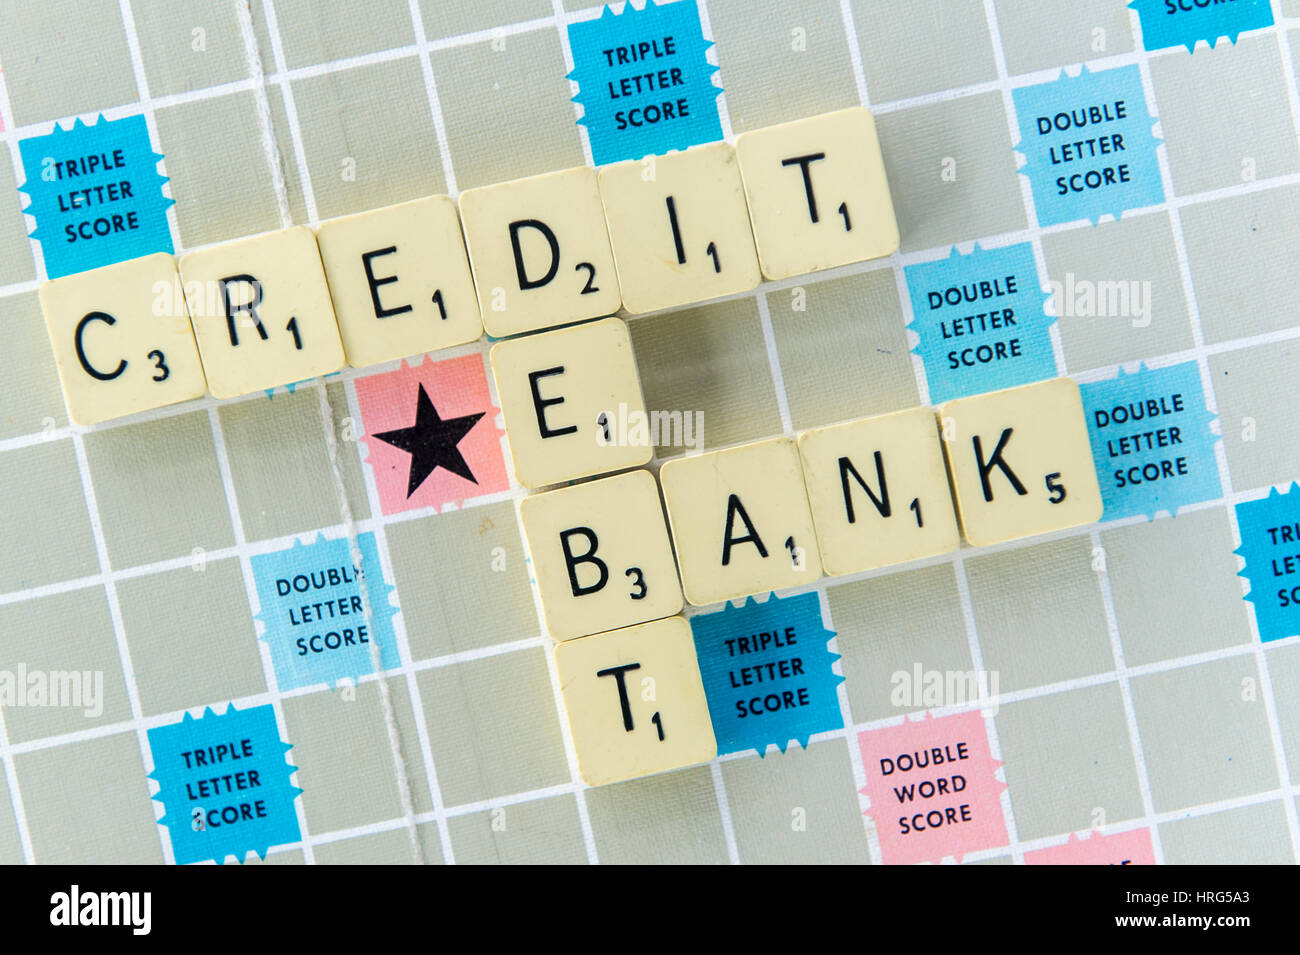 Palabras el crédito, la deuda y el Banco enunciados en un tablero de Scrabble como un concepto financiero o bancario. Foto de stock